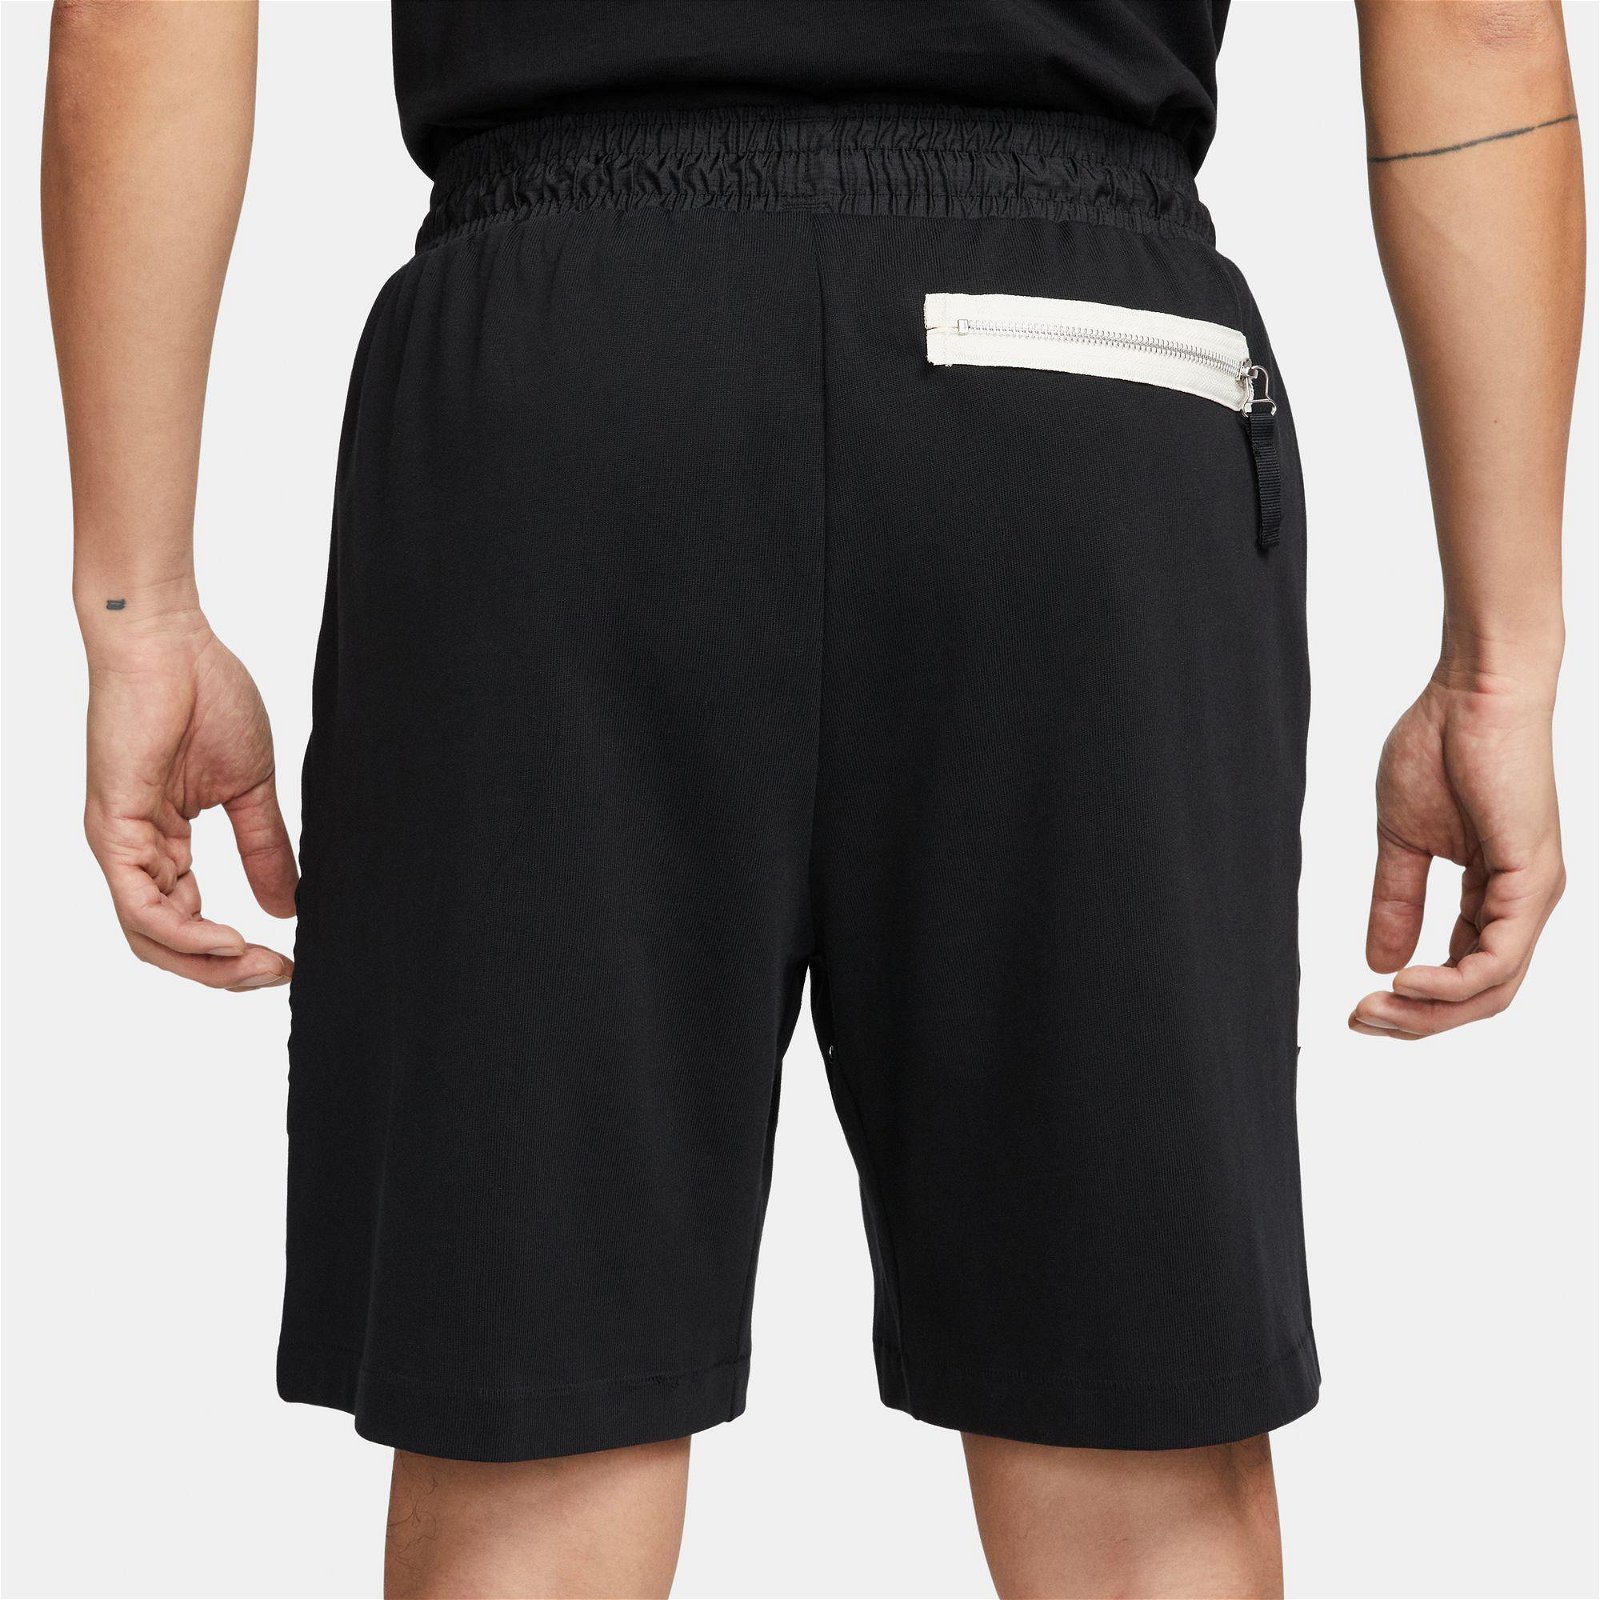 Nike Fleece 8 inç Erkek Siyah Şort